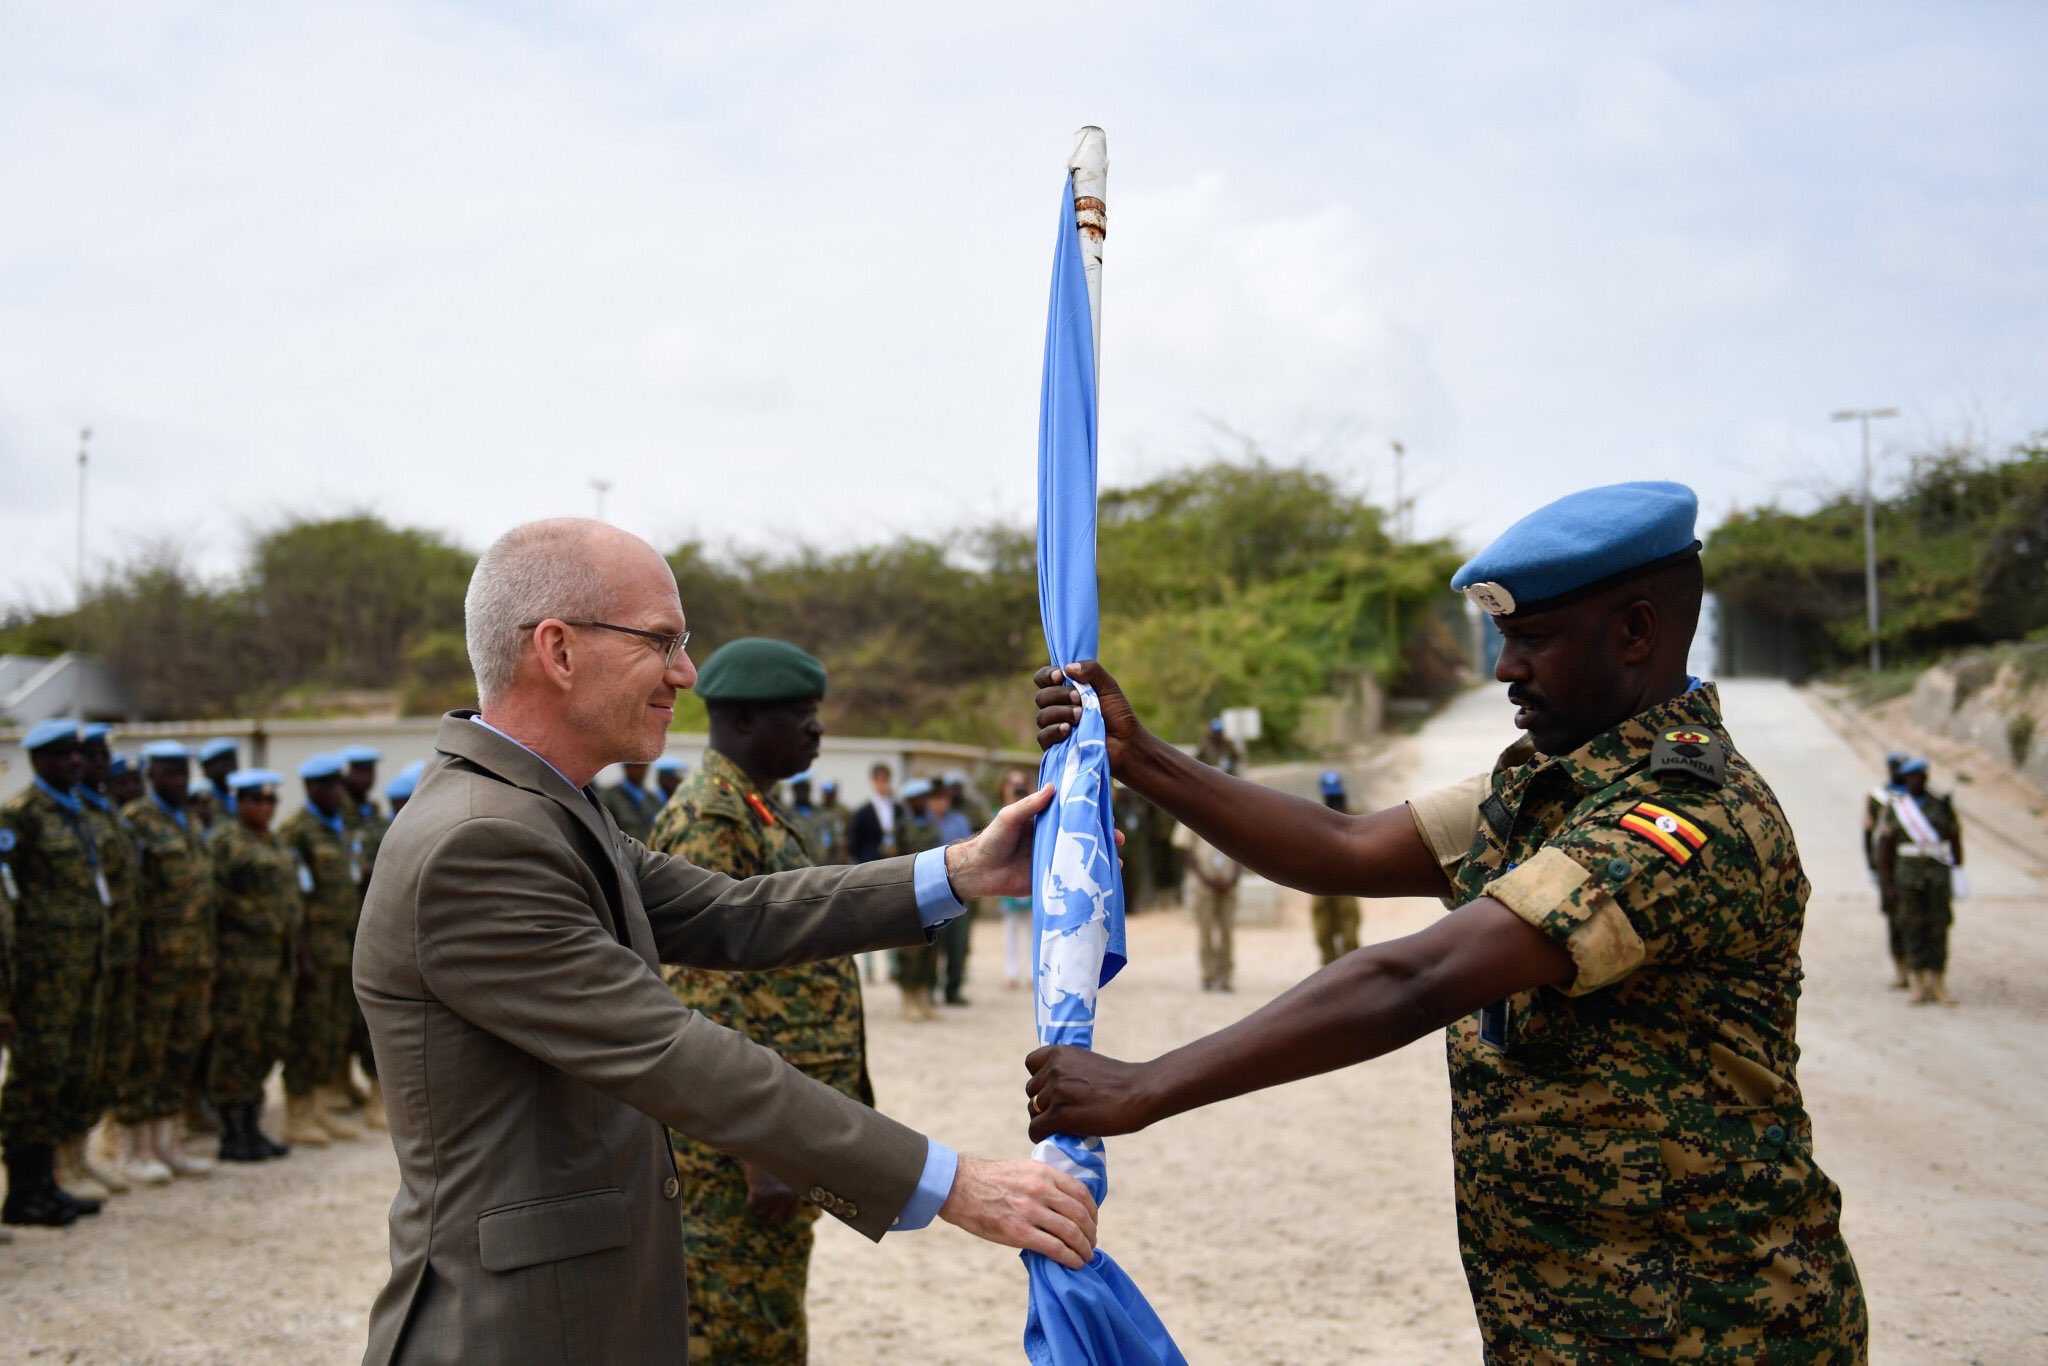 قوات حفظ السلام في الصومال